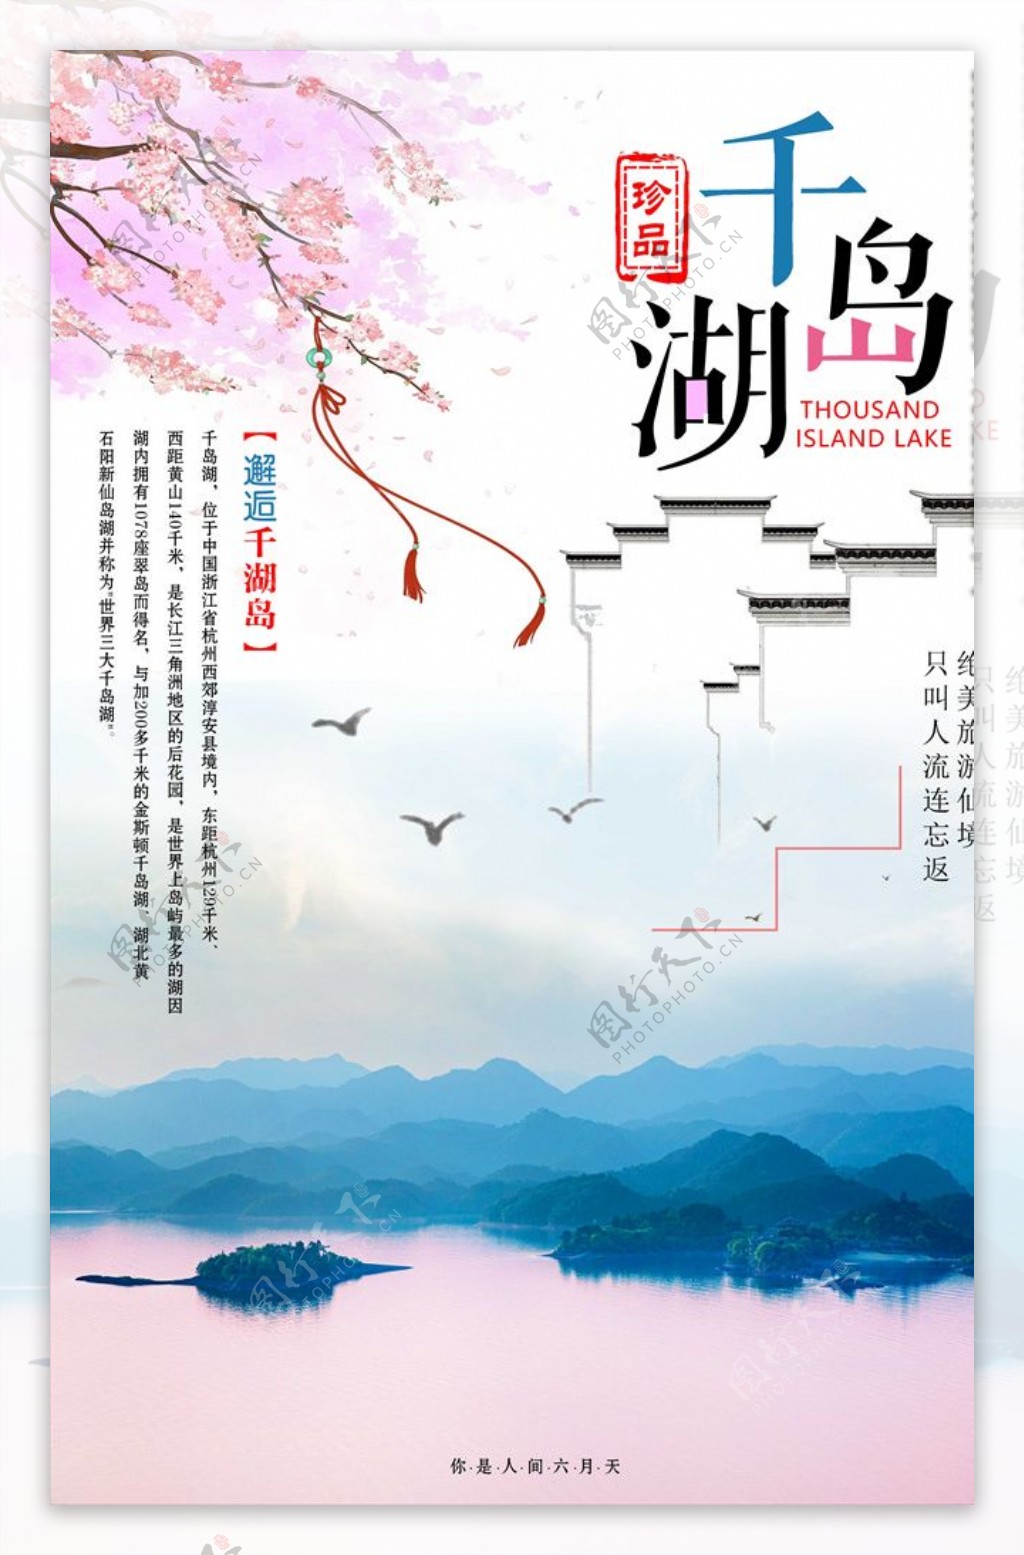 中国风千岛湖旅游海报设计